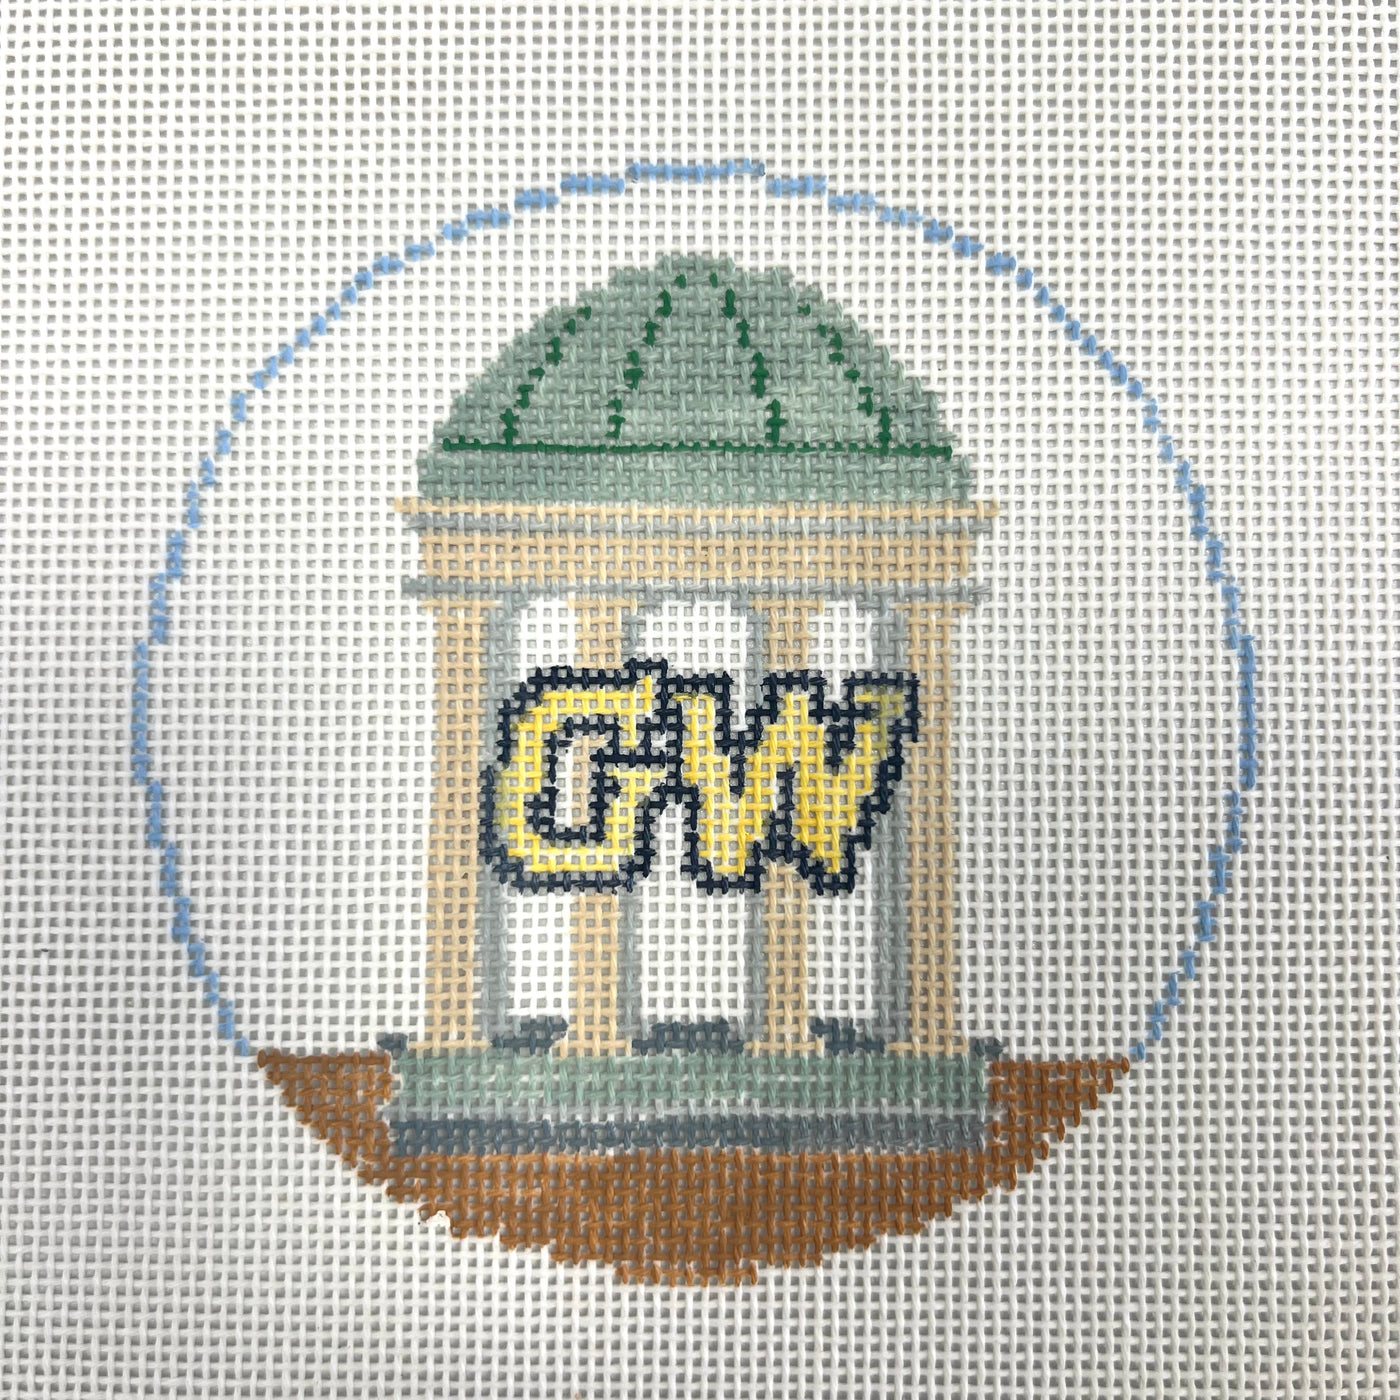 George Washington University Round Ornament Needlepoint Canvas